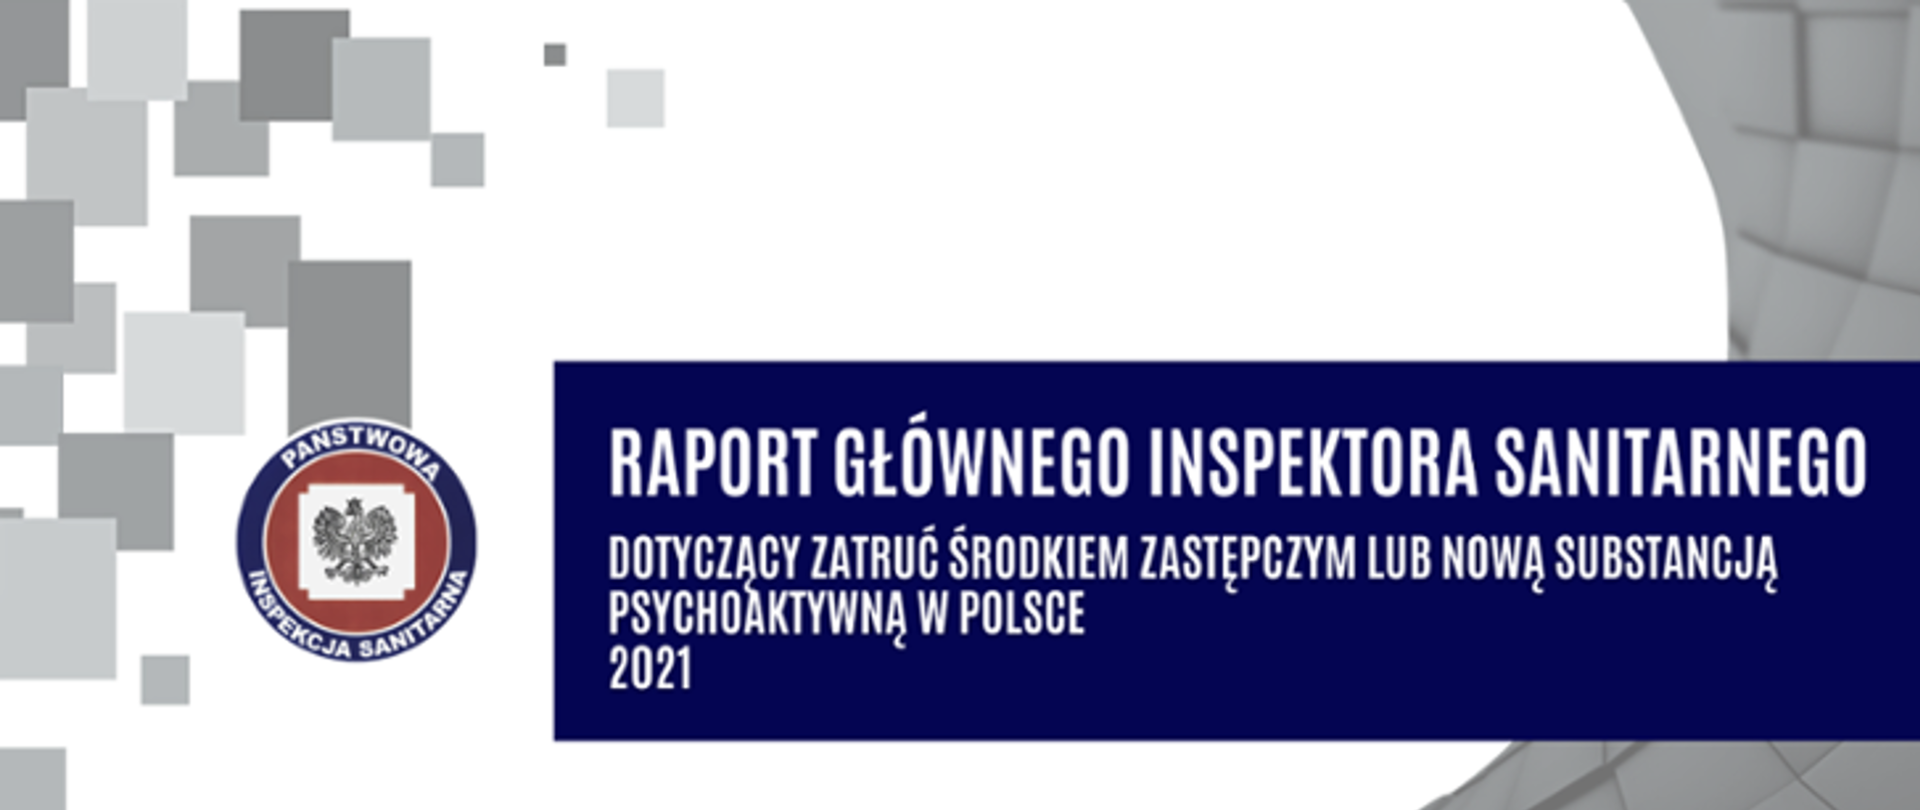 Raport Głównego Inspektora Sanitarnego dotyczący zatruć środkiem zastępczym lub nową substancją psychoaktywną w Polsce za 2021 